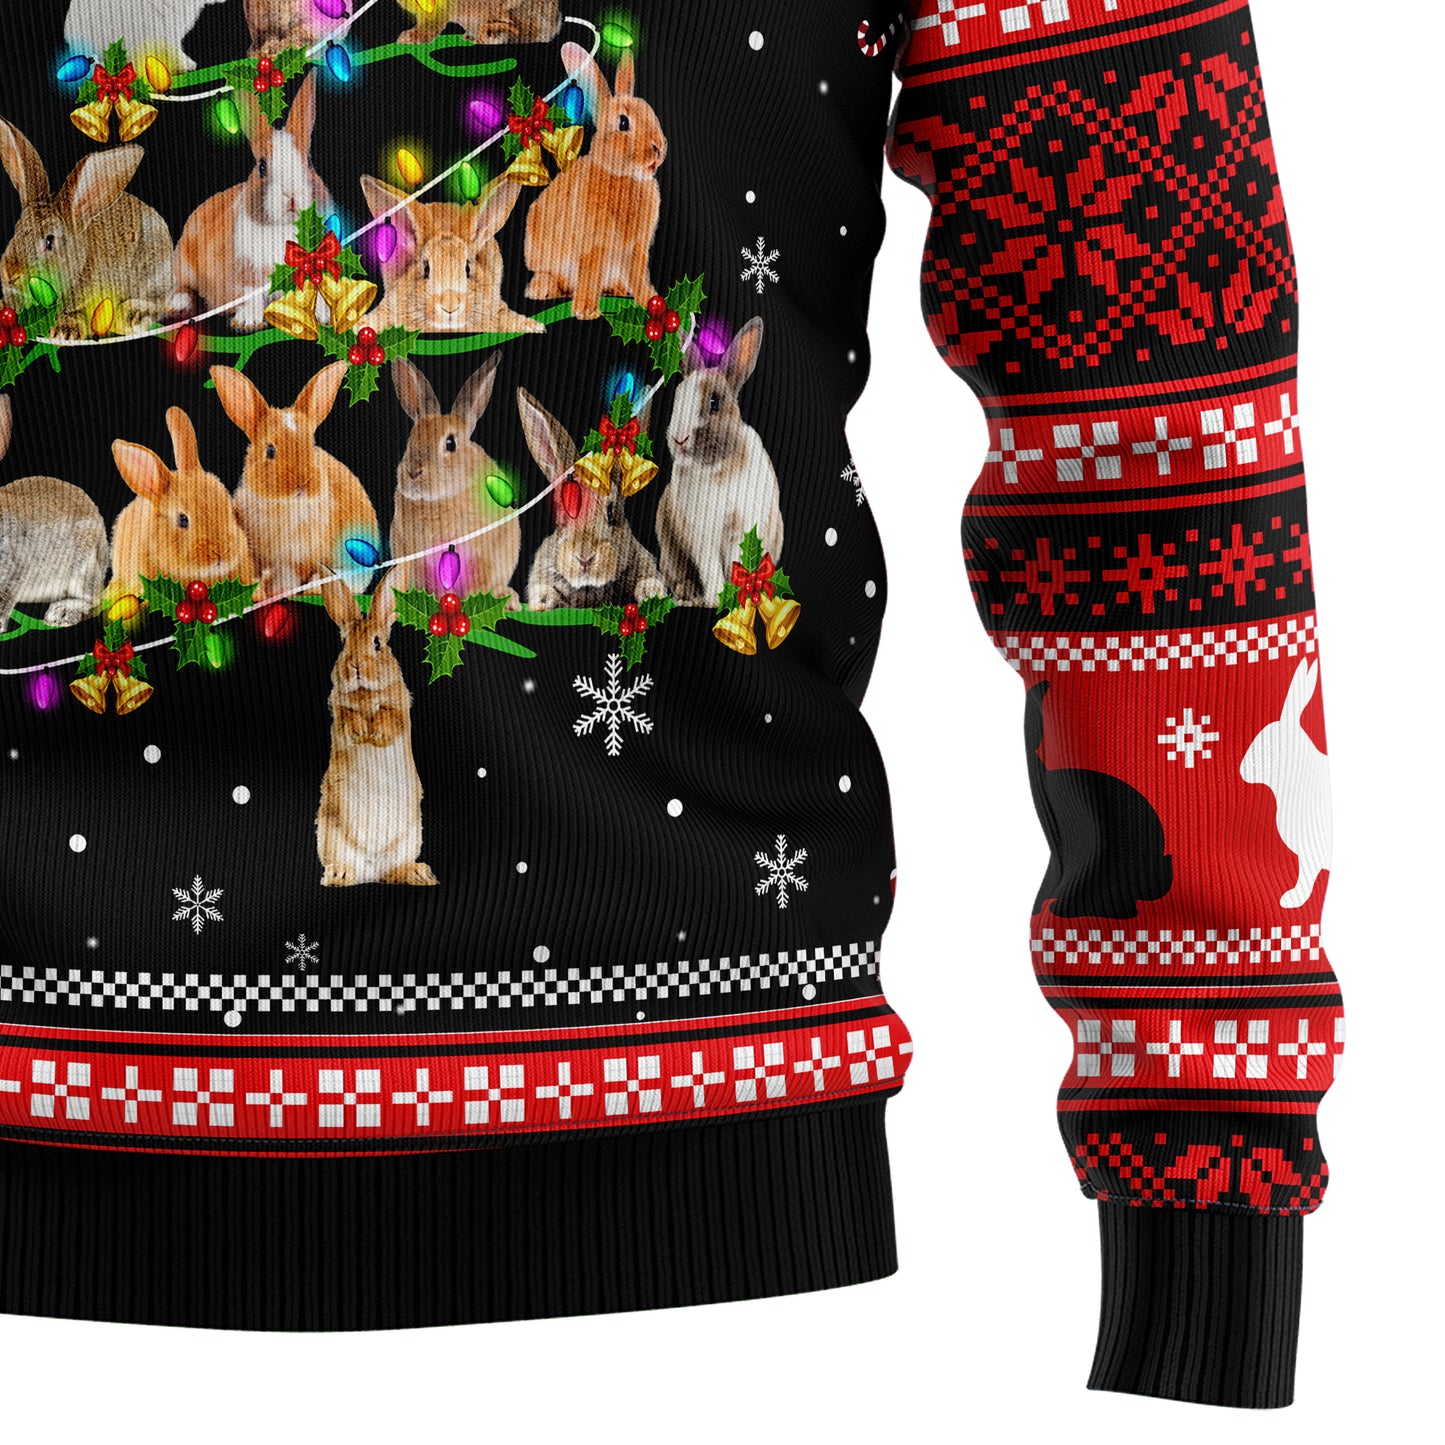 Rabbit Pine Christmas T229 All Over Print Ugly Christmas Sweater